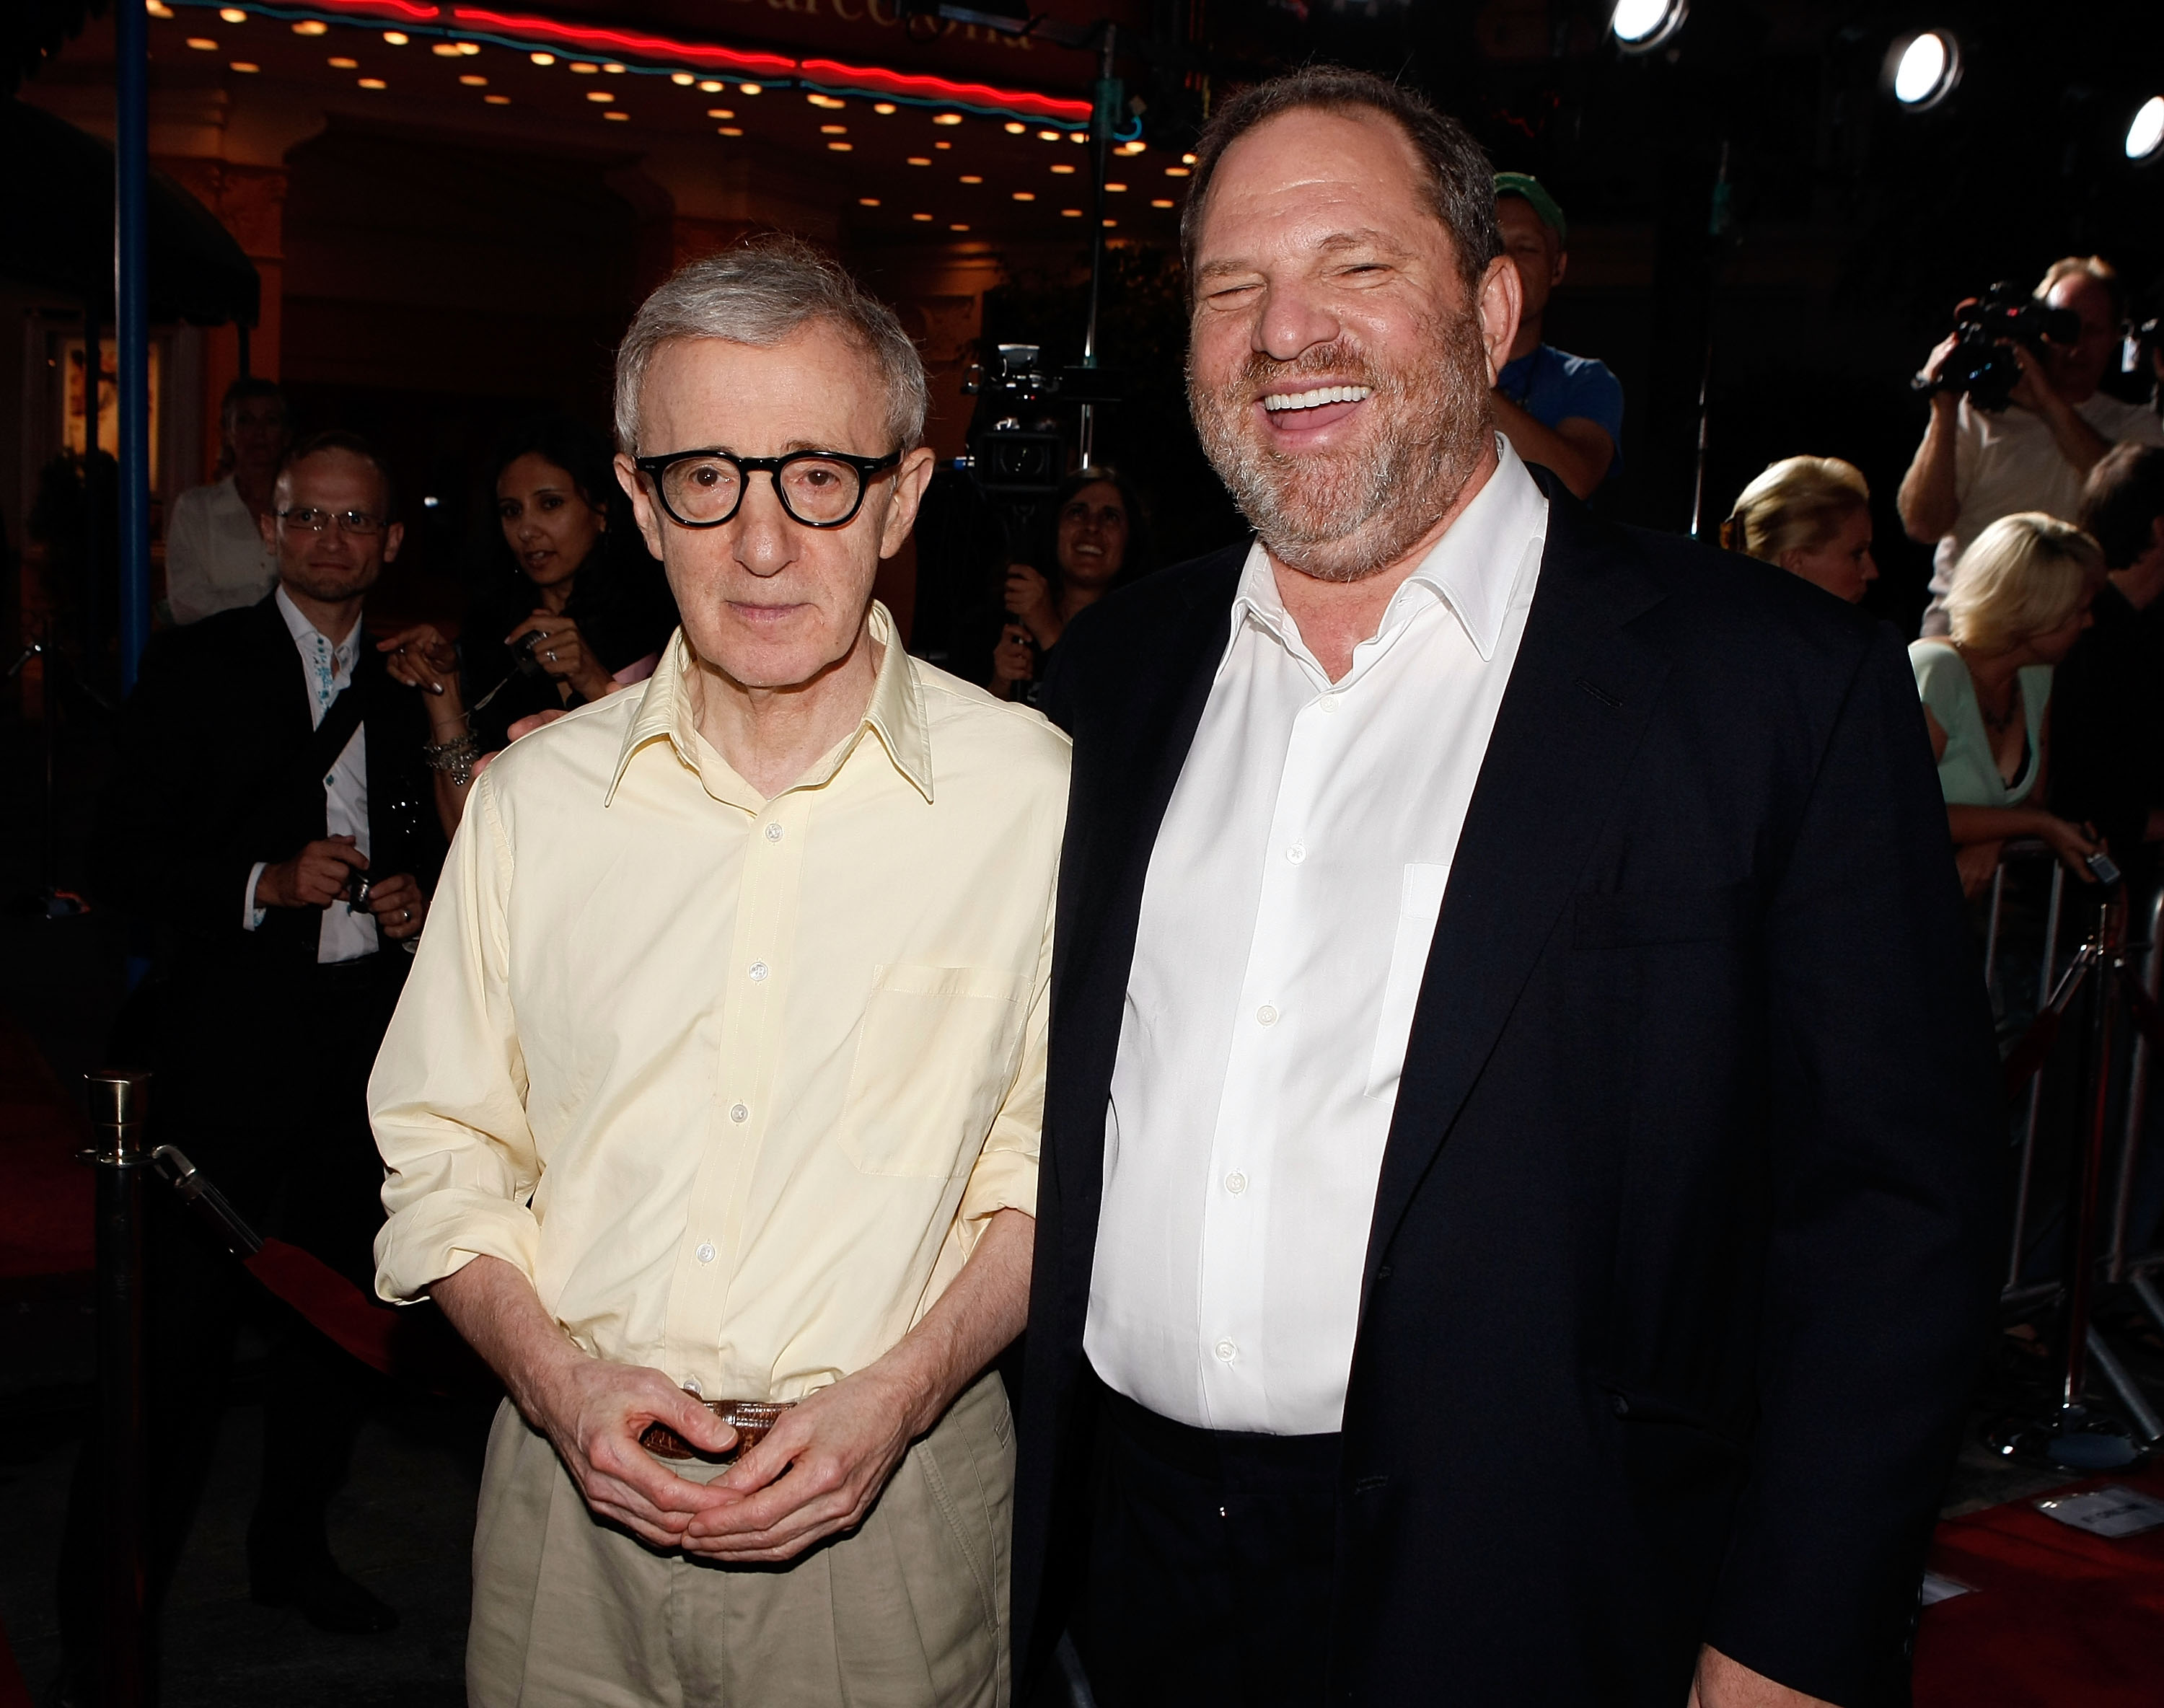 Woody Allen attól tart, hogy a Weinstein-ügy miatt majd mindenkit megvádolnak, aki csak rákacsint egy nőre